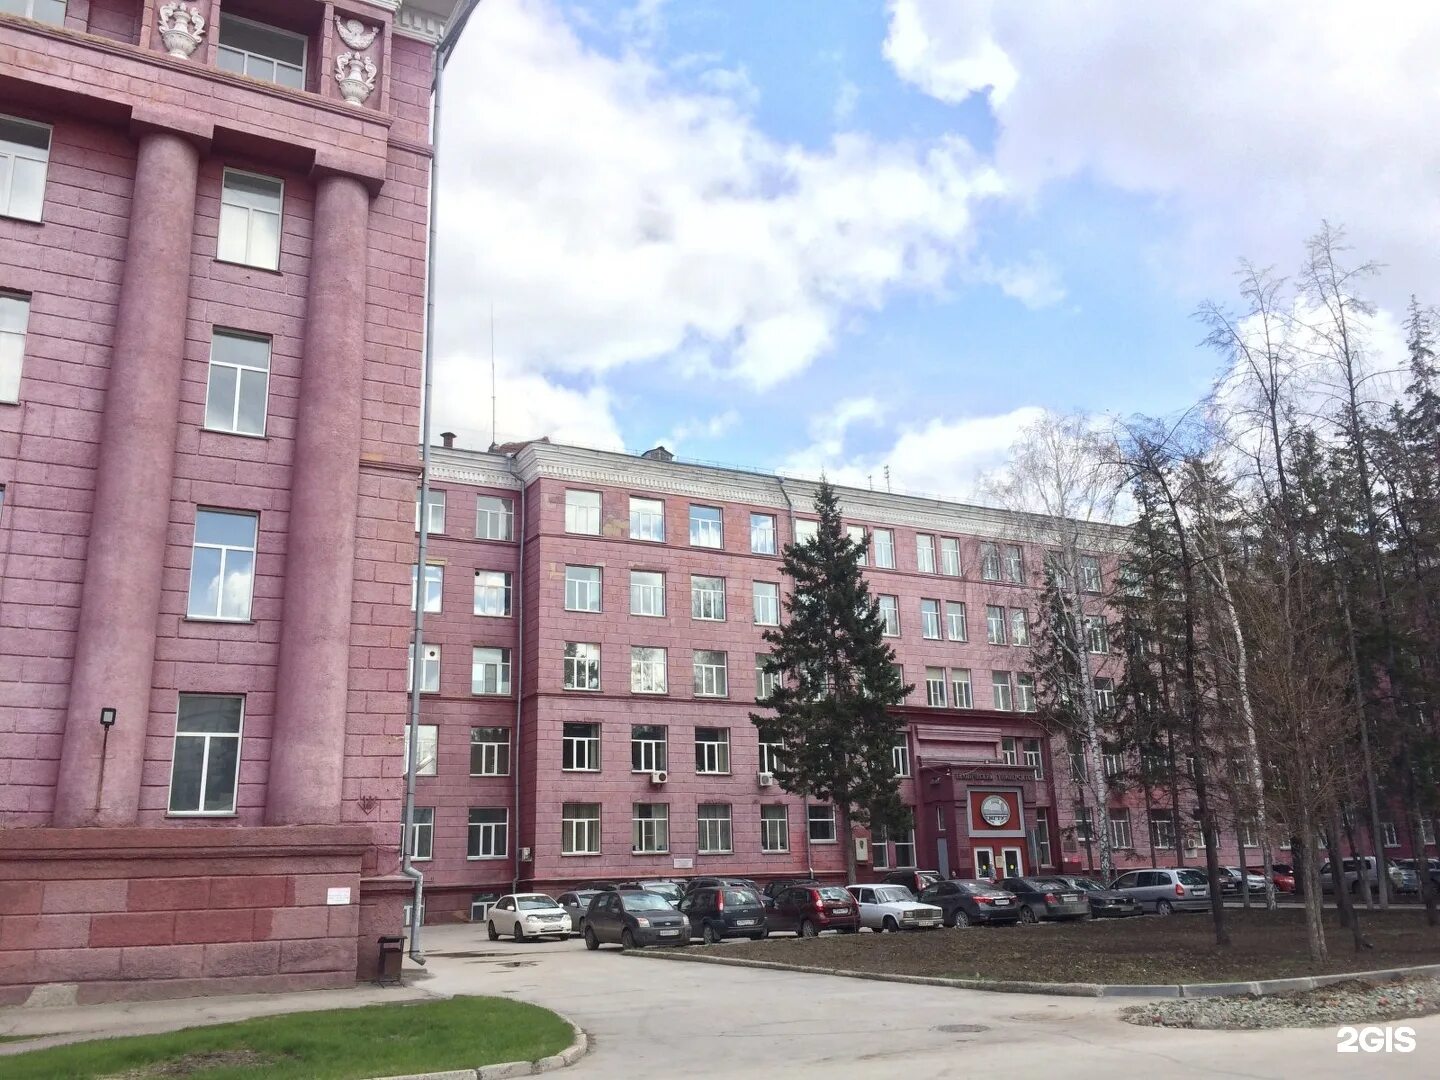 НГТУ университет Новосибирск. Новосибирского государственного технического университета НЭТИ. НГТУ НЭТИ Новосибирск 2021.